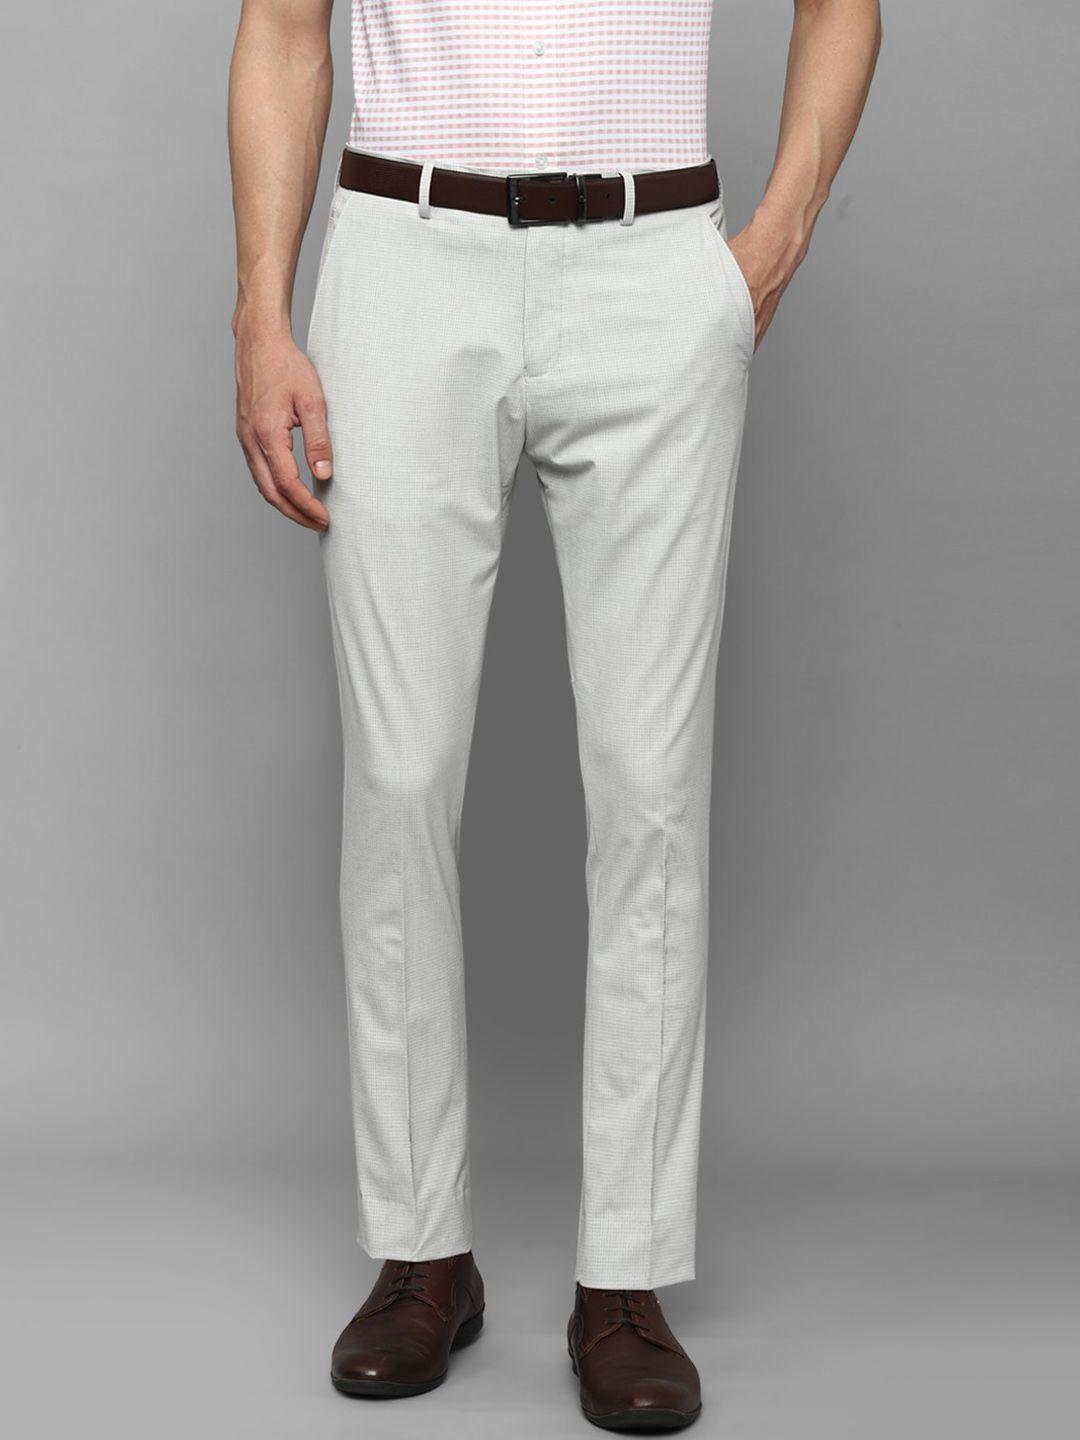 louis philippe men mis-rise textured slim fit plain formal trousers